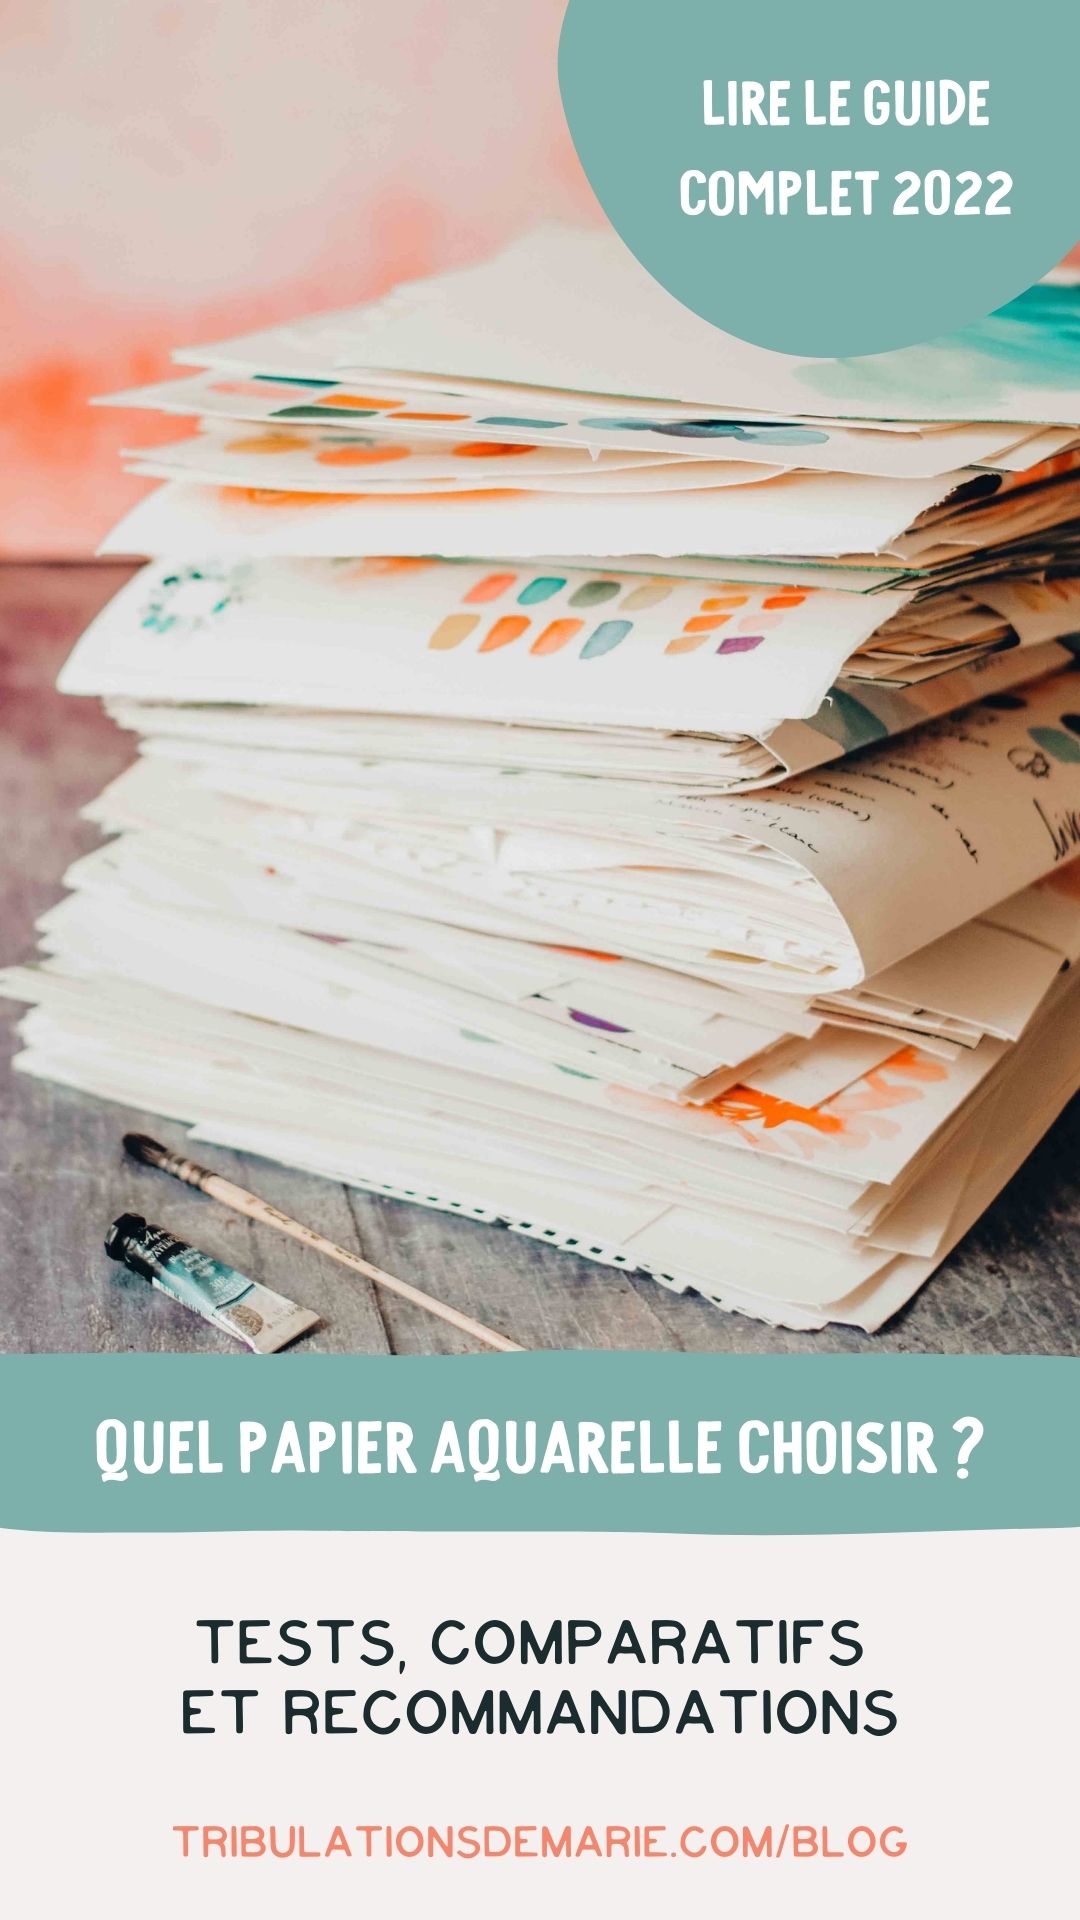 Article : quel papier aquarelle choisir ?